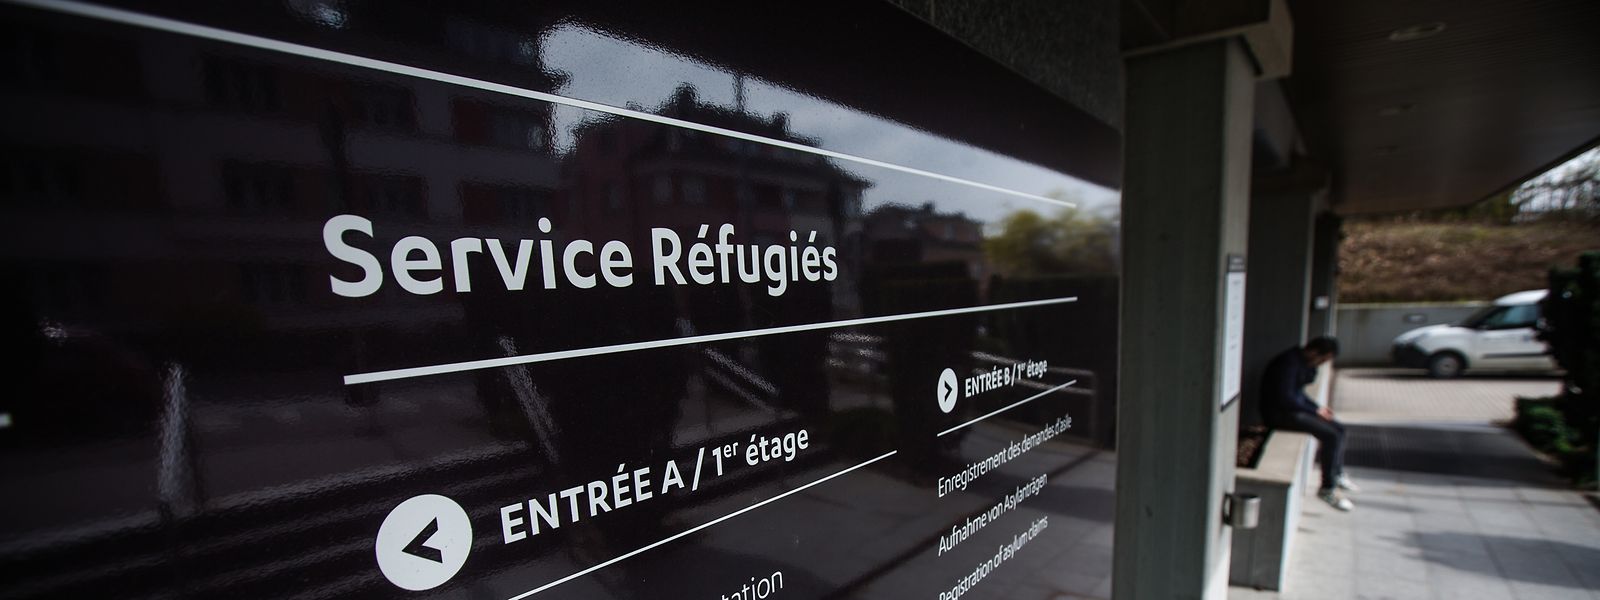 Im „Service Réfugiés“ fällt die Entscheidung, ob ein Asylbewerber als Flüchtling anerkannt wird oder nicht.